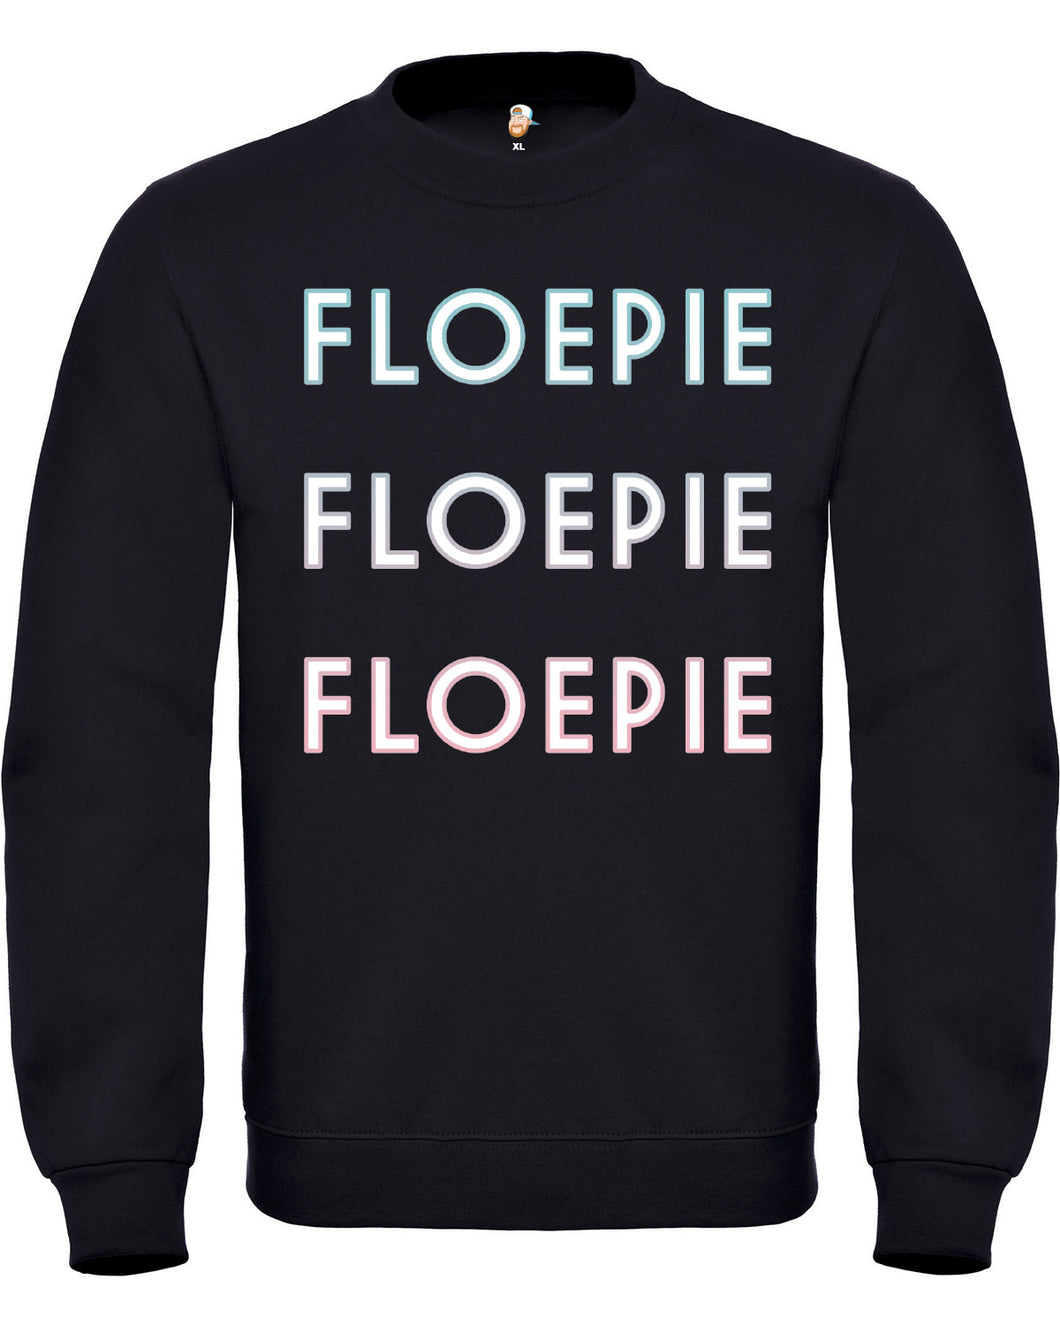 Floepie Sweater